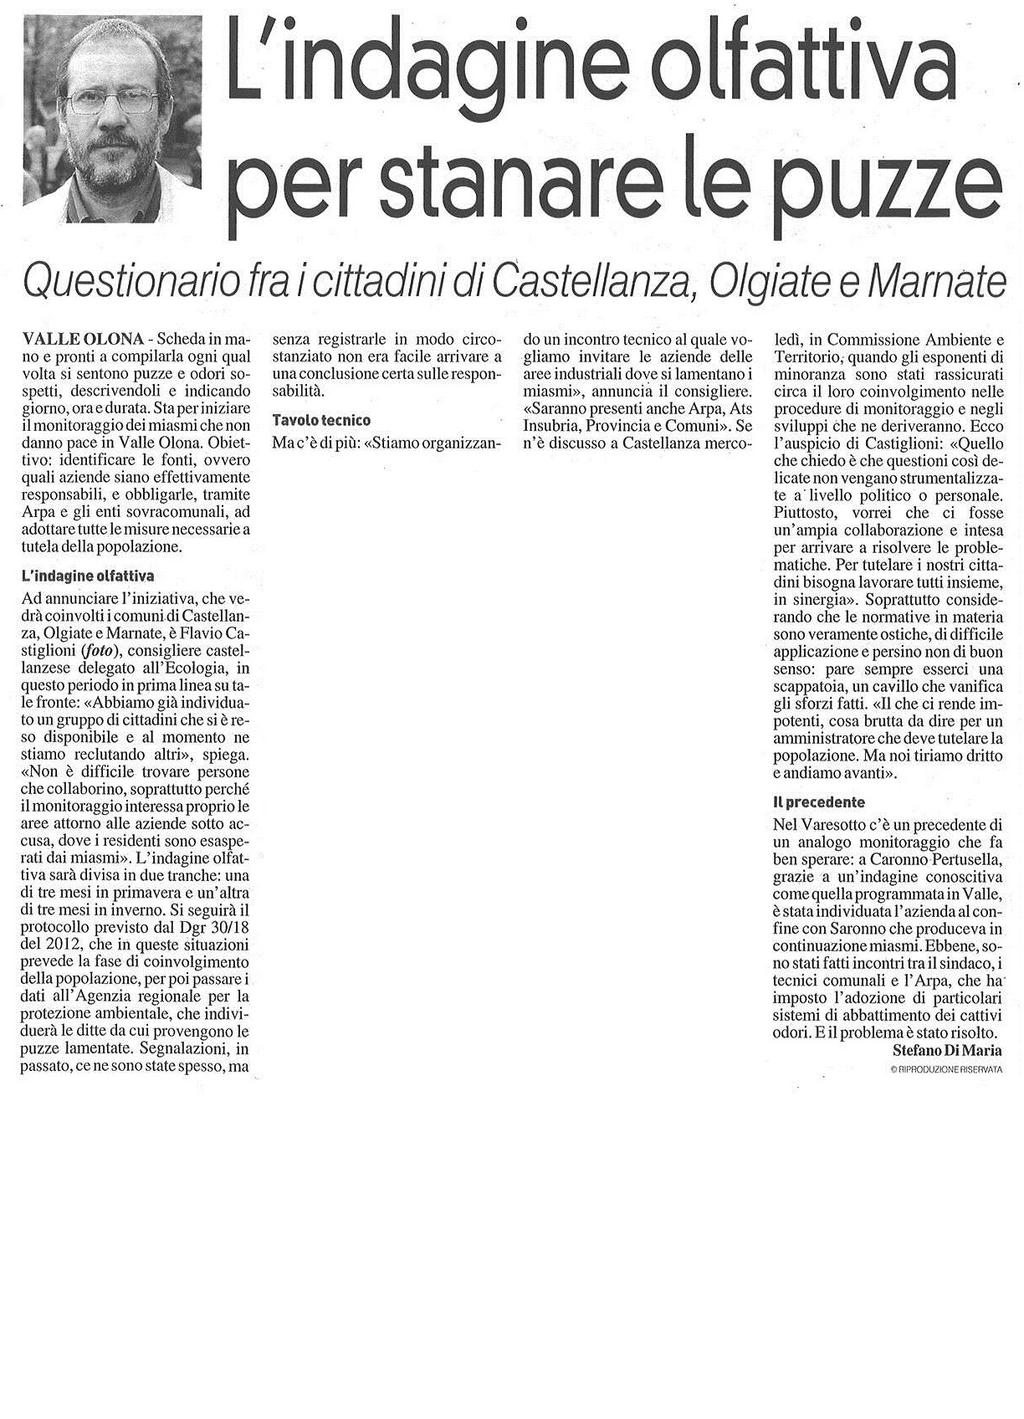 L'INDAGINE OLFATTIVA PER STANARE LE PUZZE Questionario tra i cittadini di Castellanza, Olgiate e